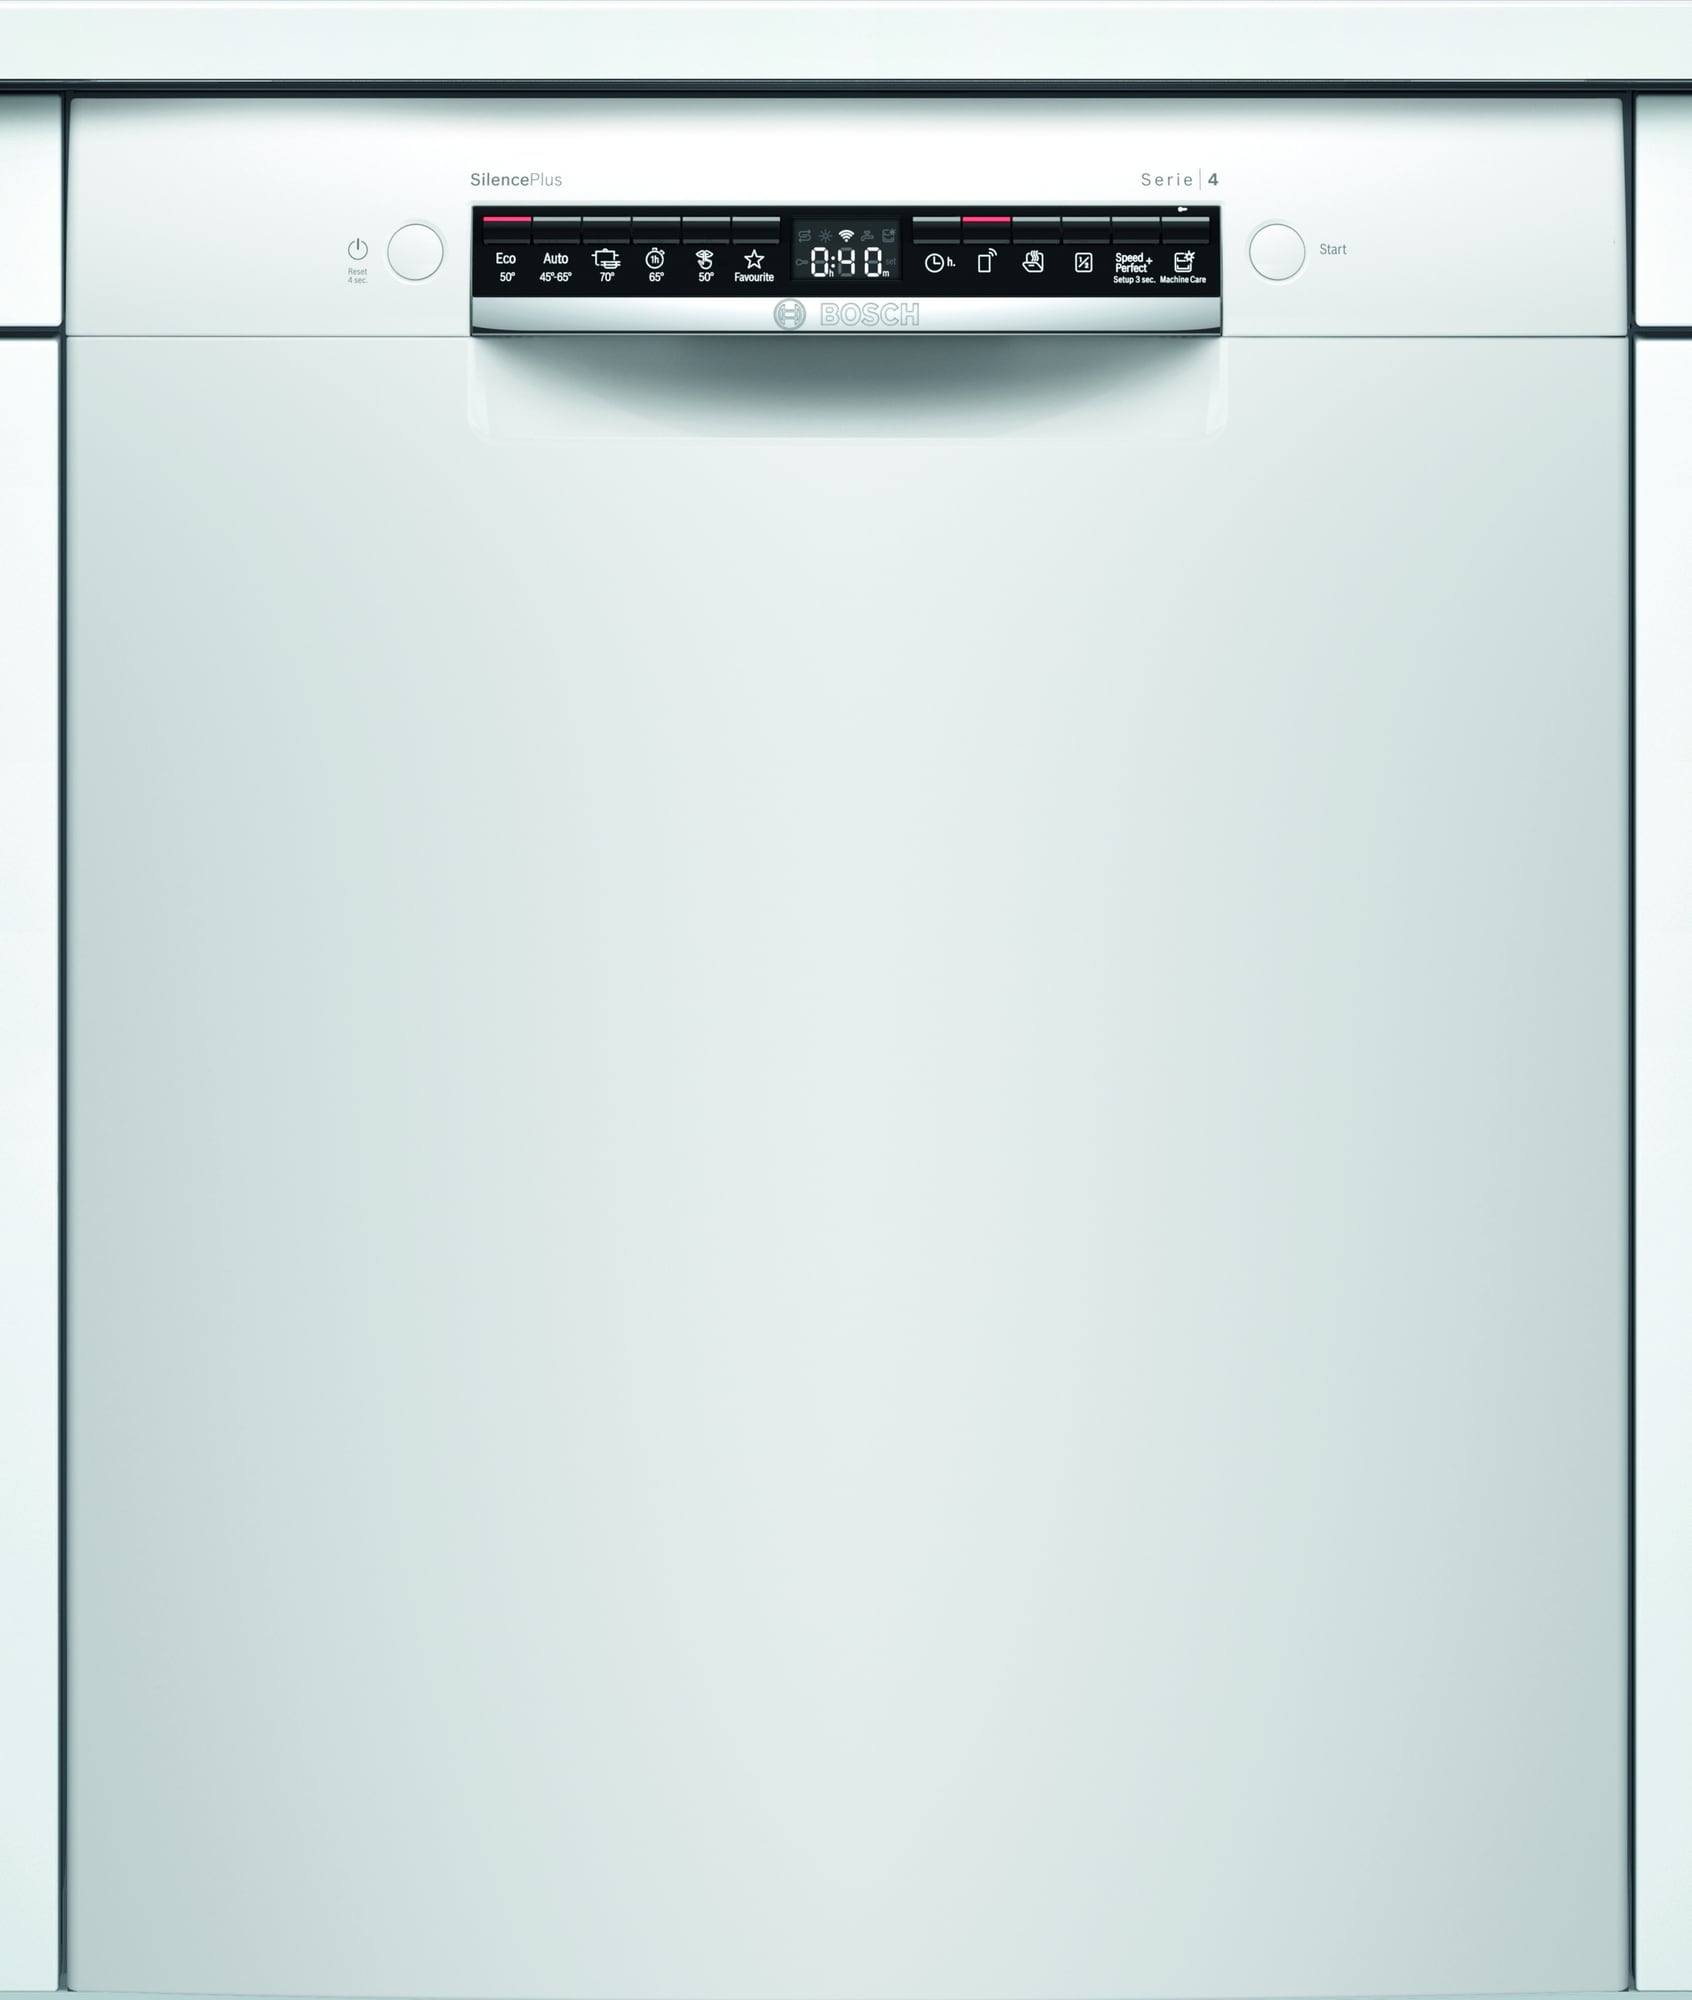 Køb Bosch Opvaskemaskine online til meget lav pris!